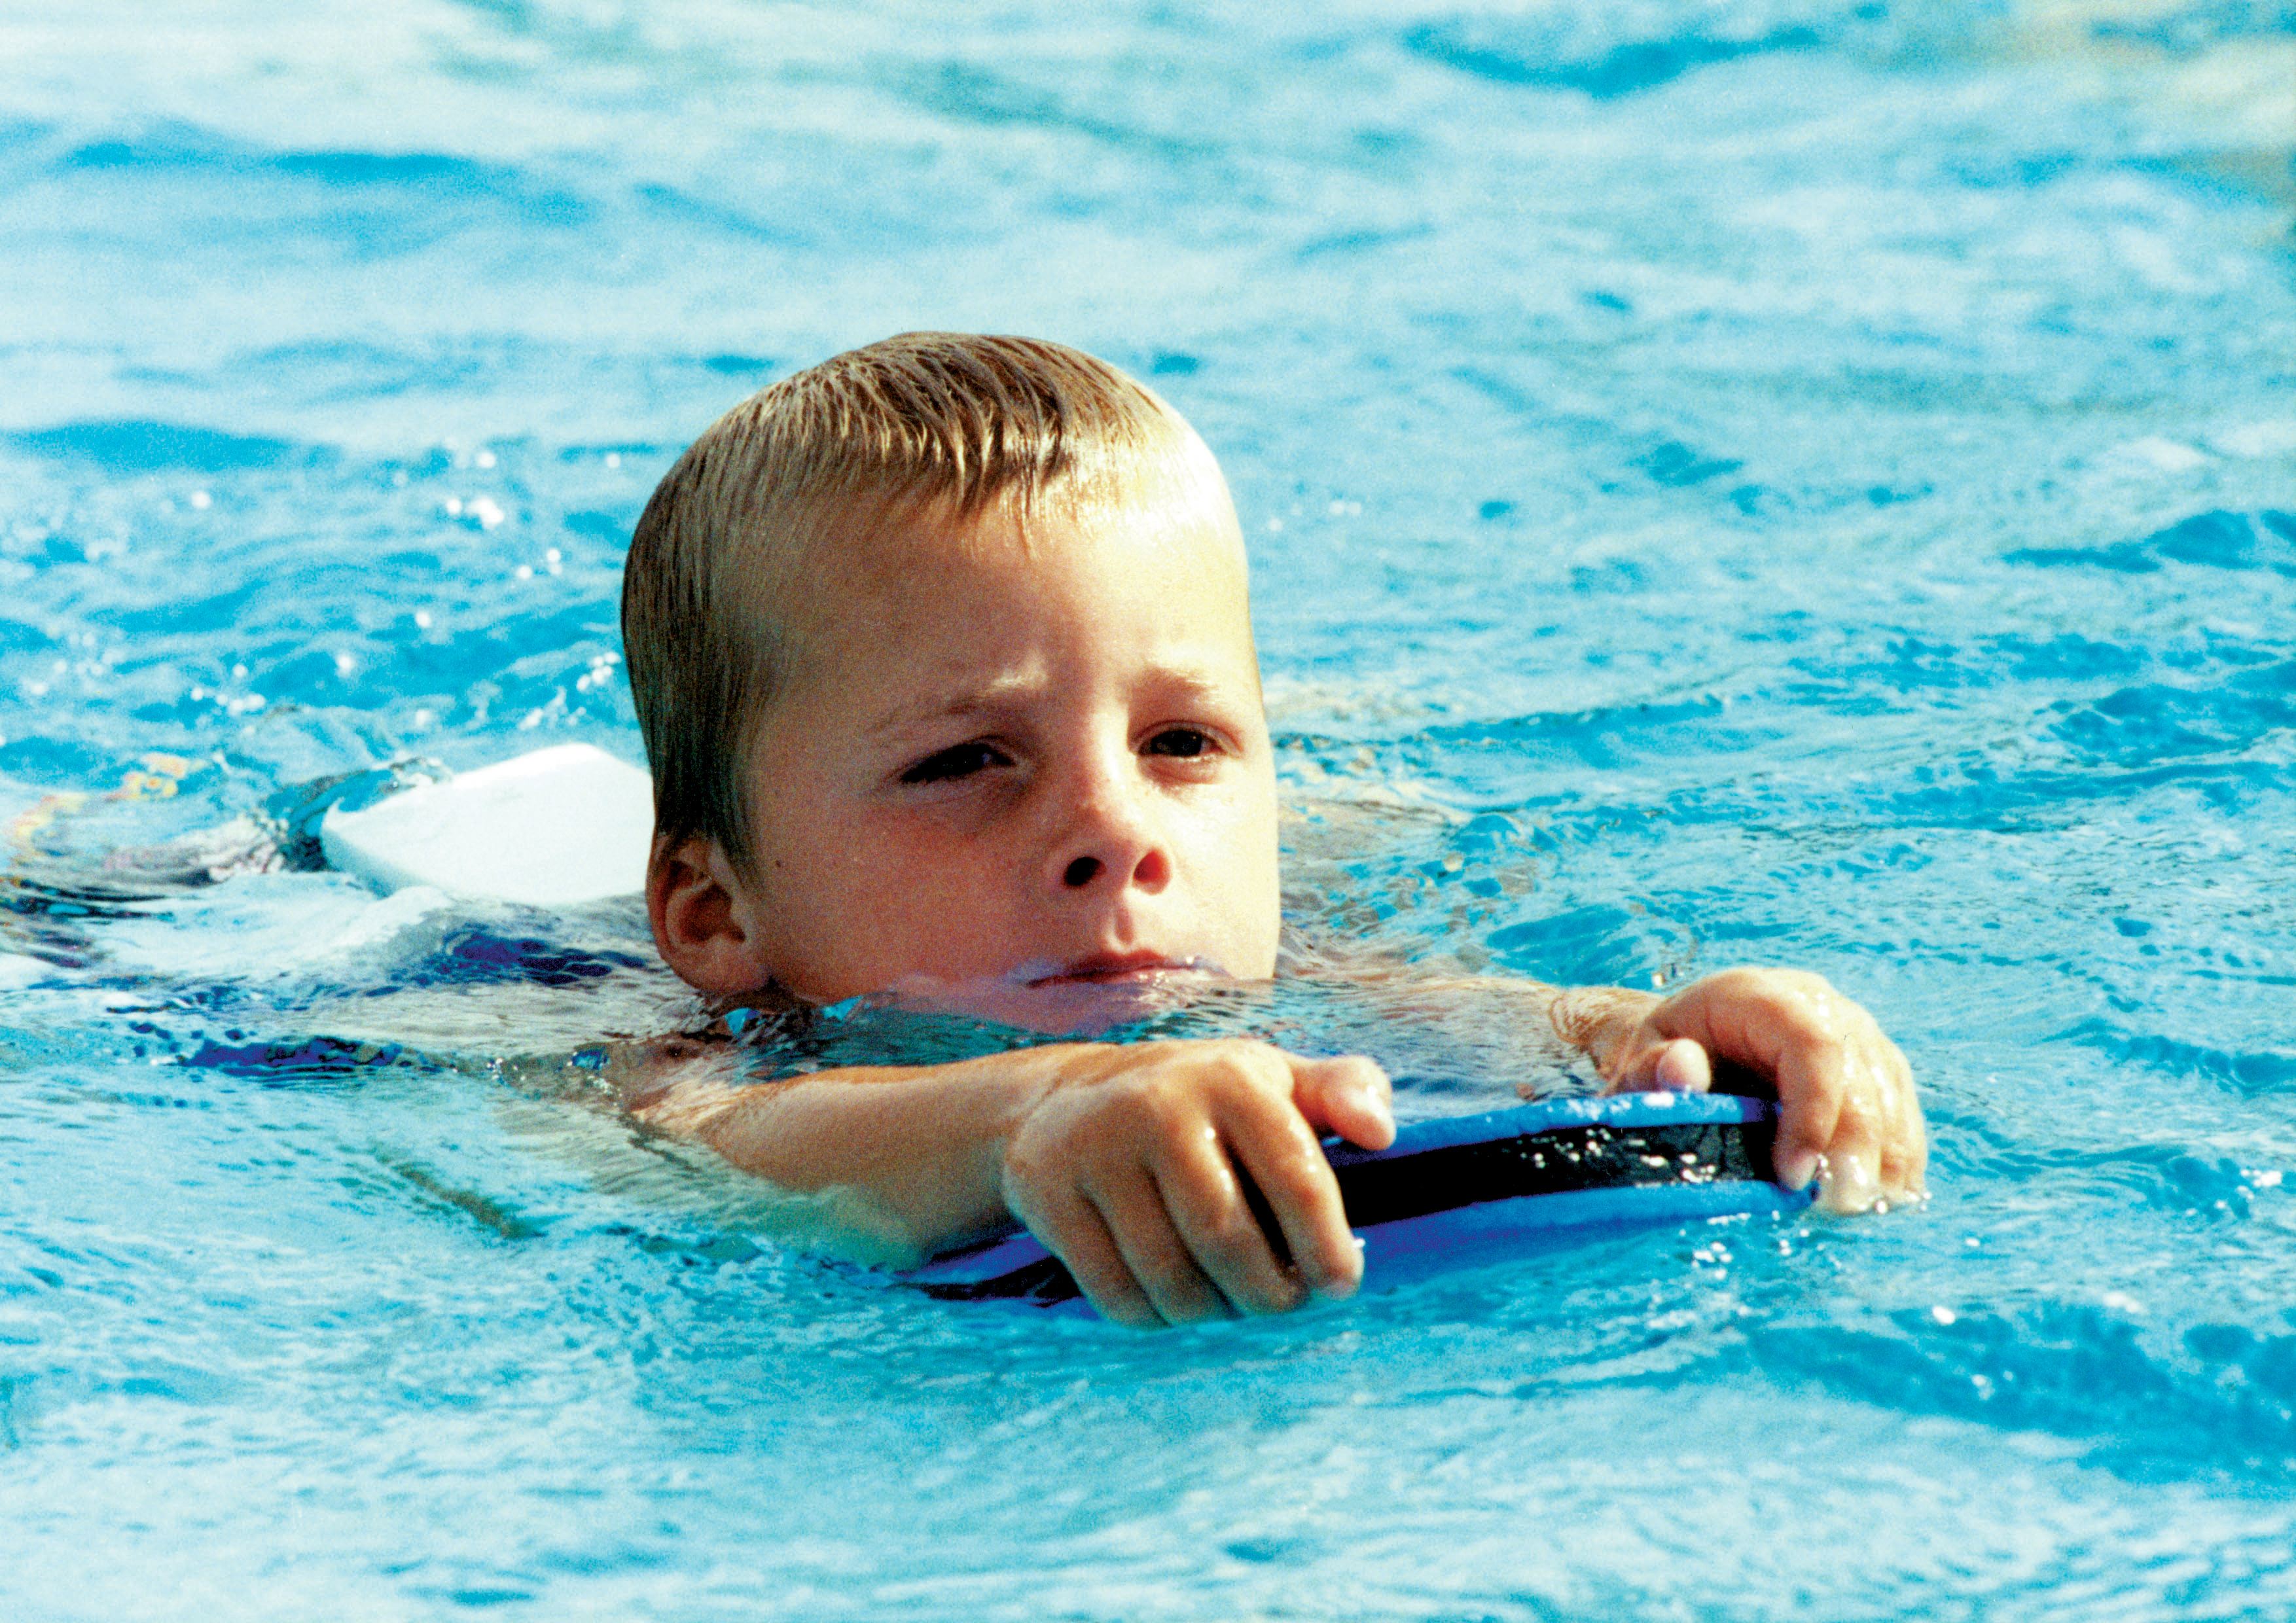 Kind mit Schwimmbrett im Wasser